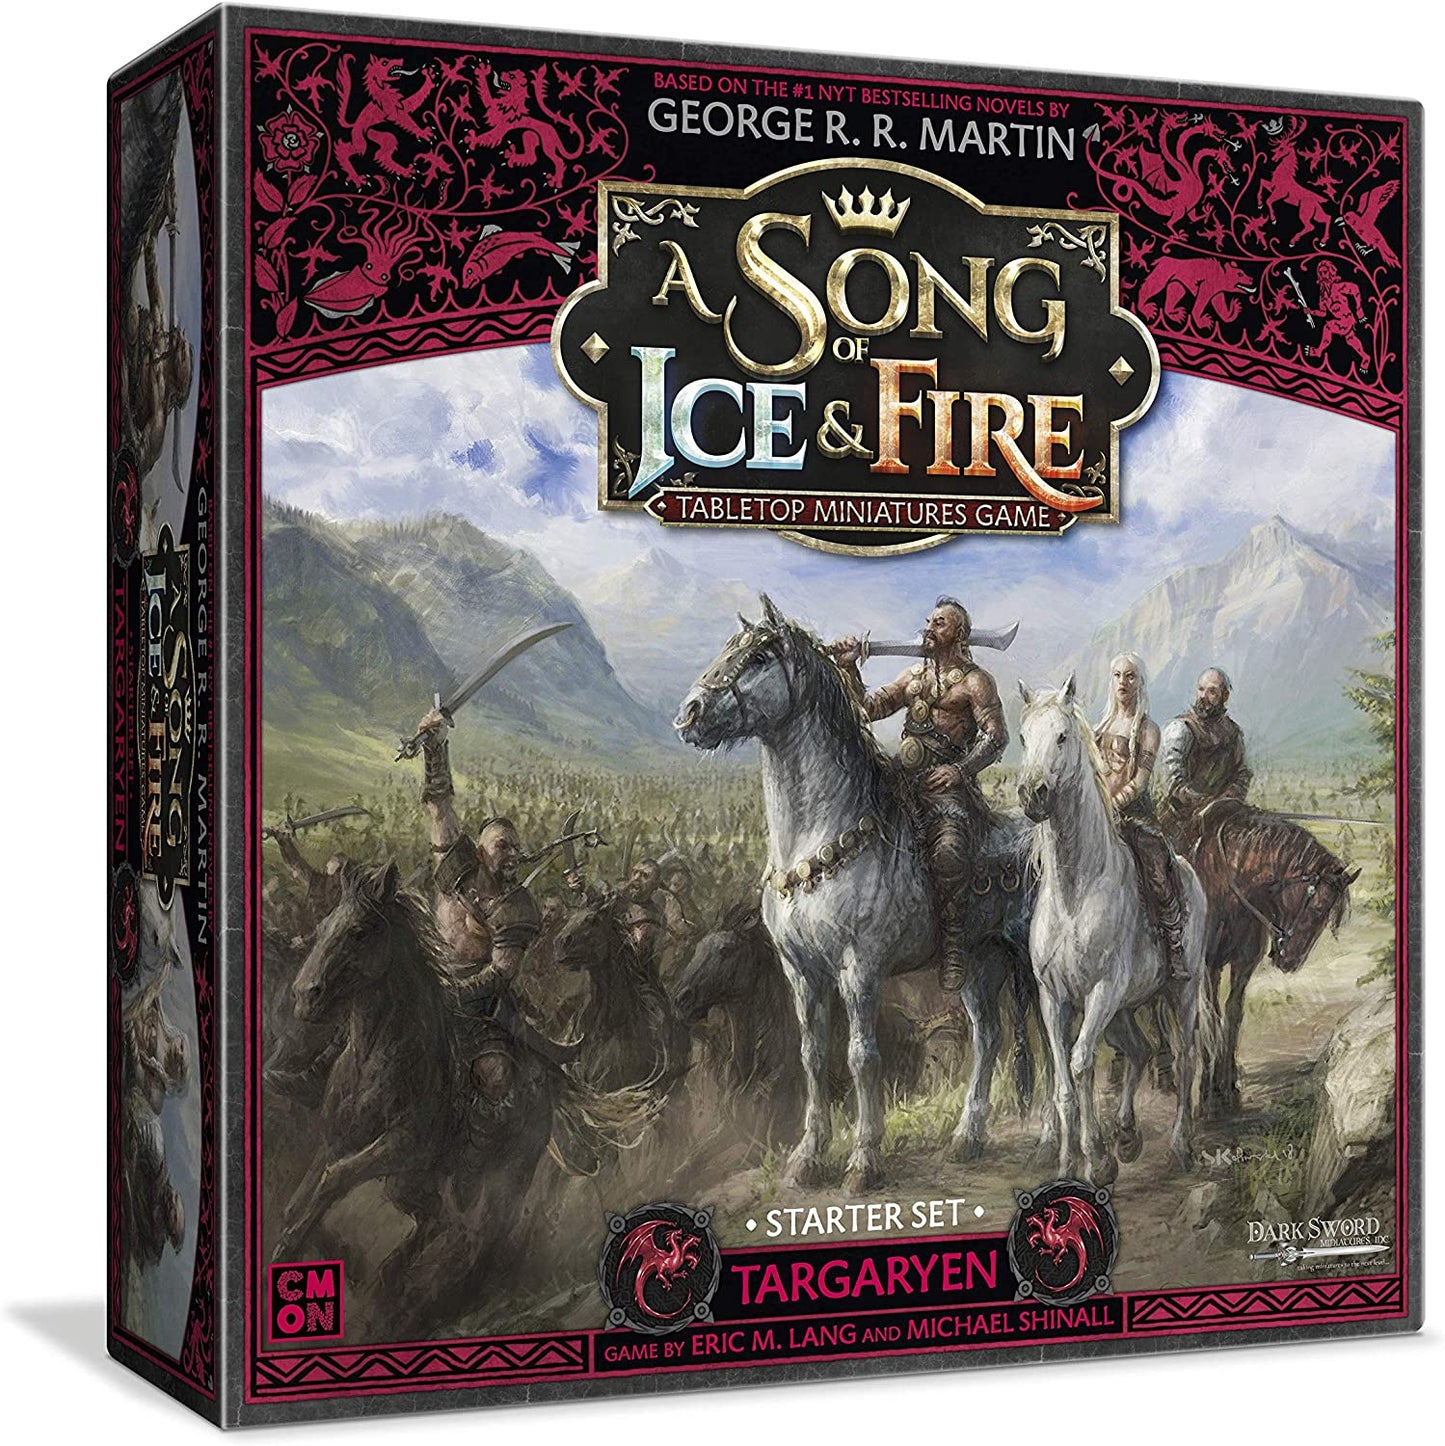 A Song of Ice and Fire - Targaryen: Starter Set